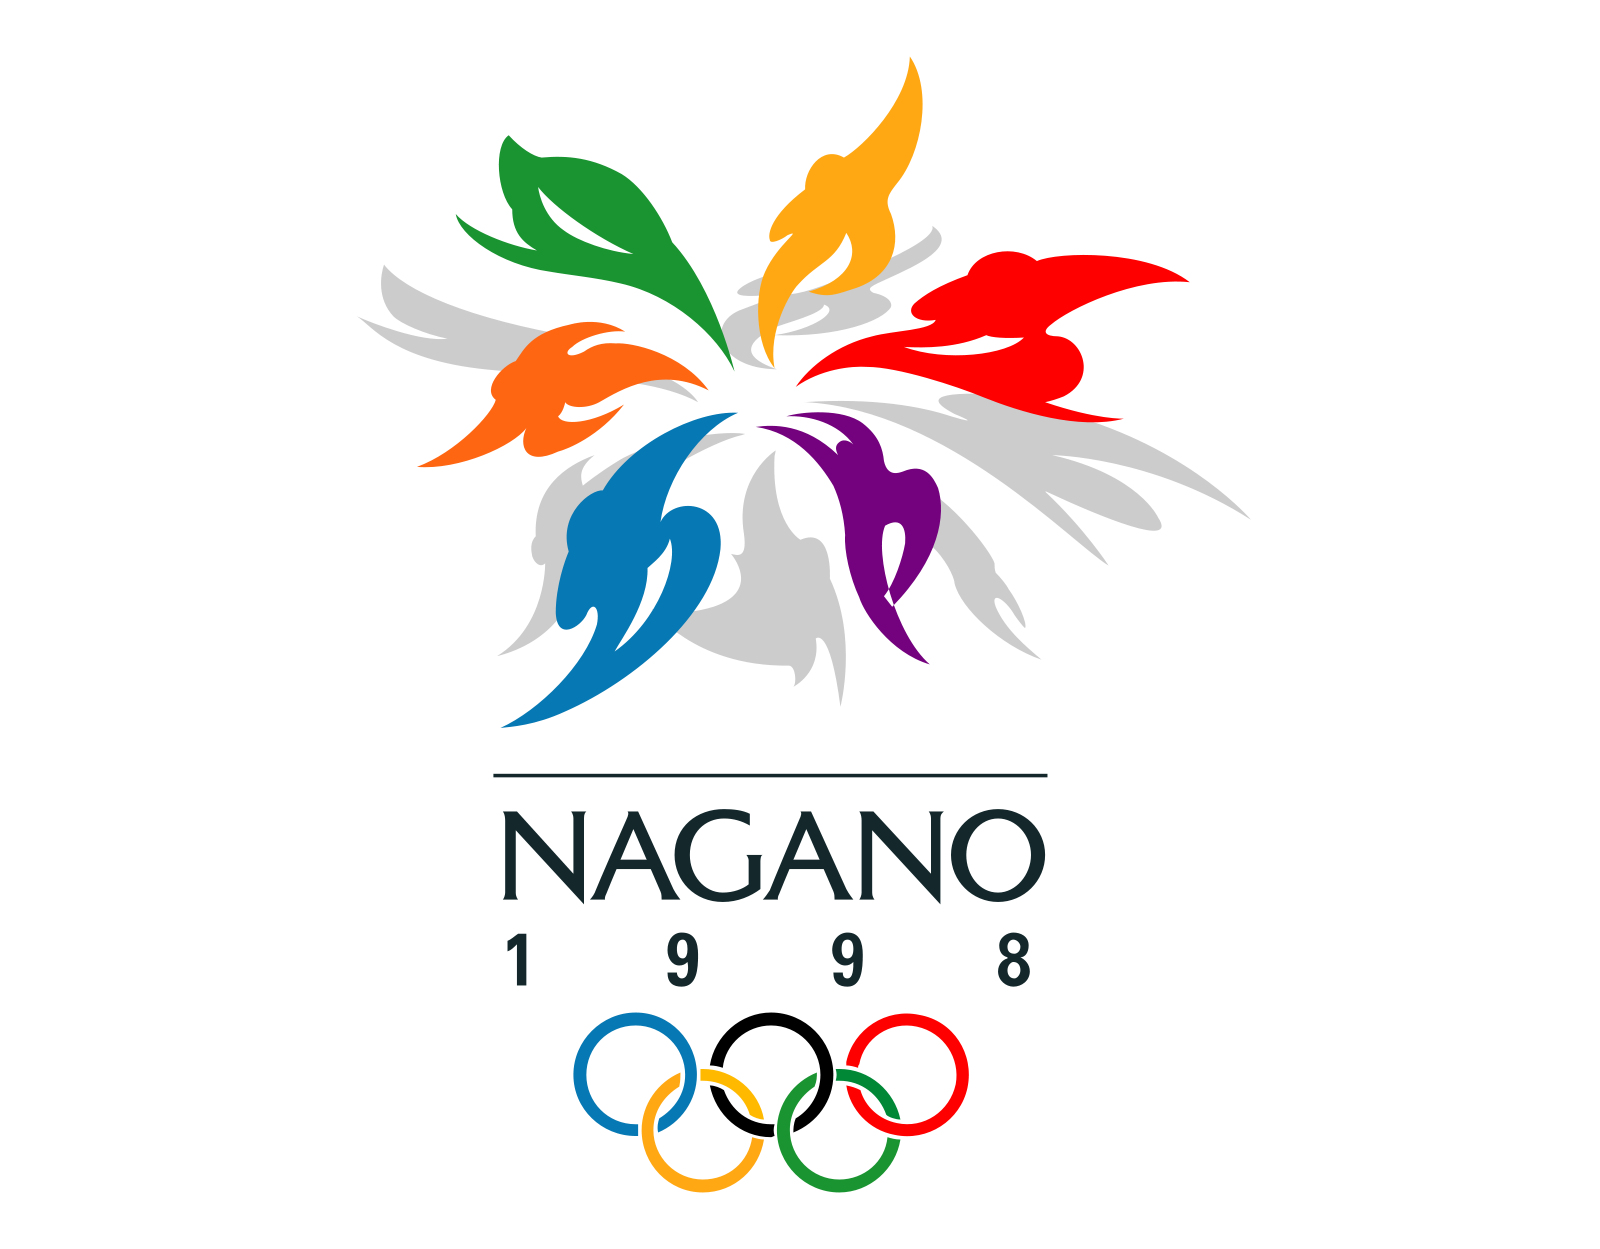 Nagano – Winter Olympics 1998